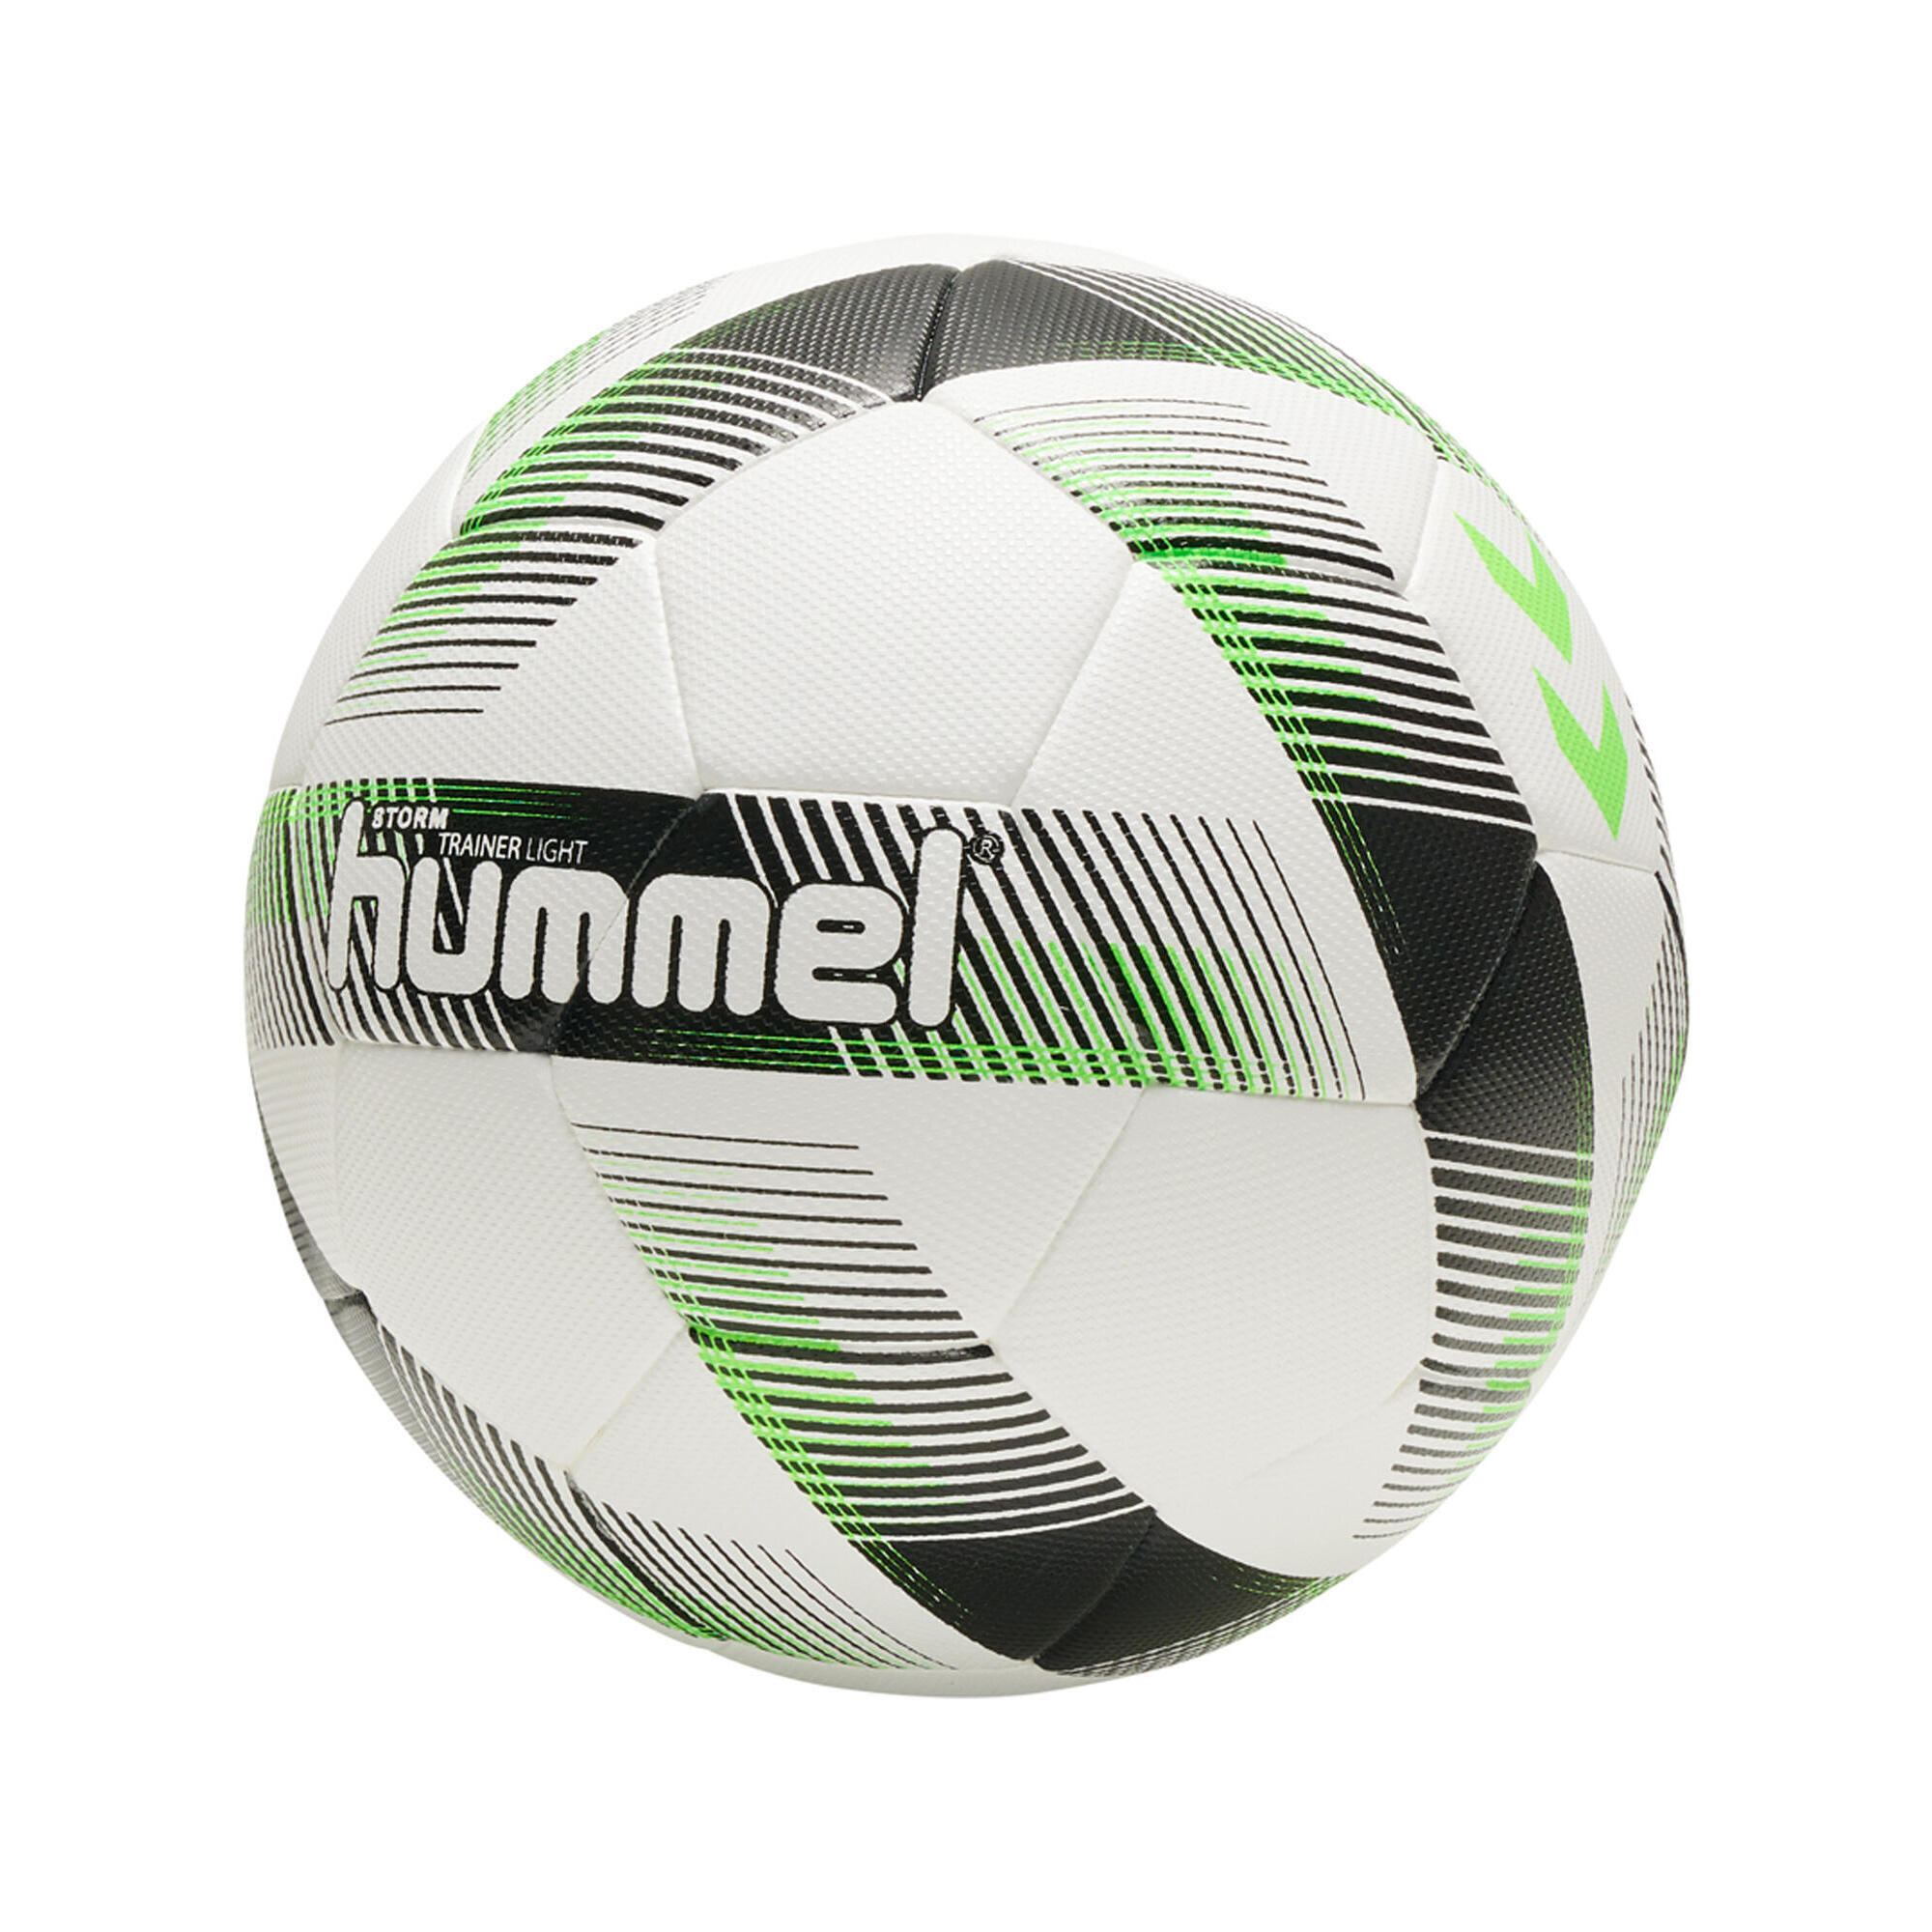 Zdjęcia - Piłka do tenisa stołowego HUMMEL Piłka do piłki nożnej dla dzieci  Storm Trainer Light FB 4 